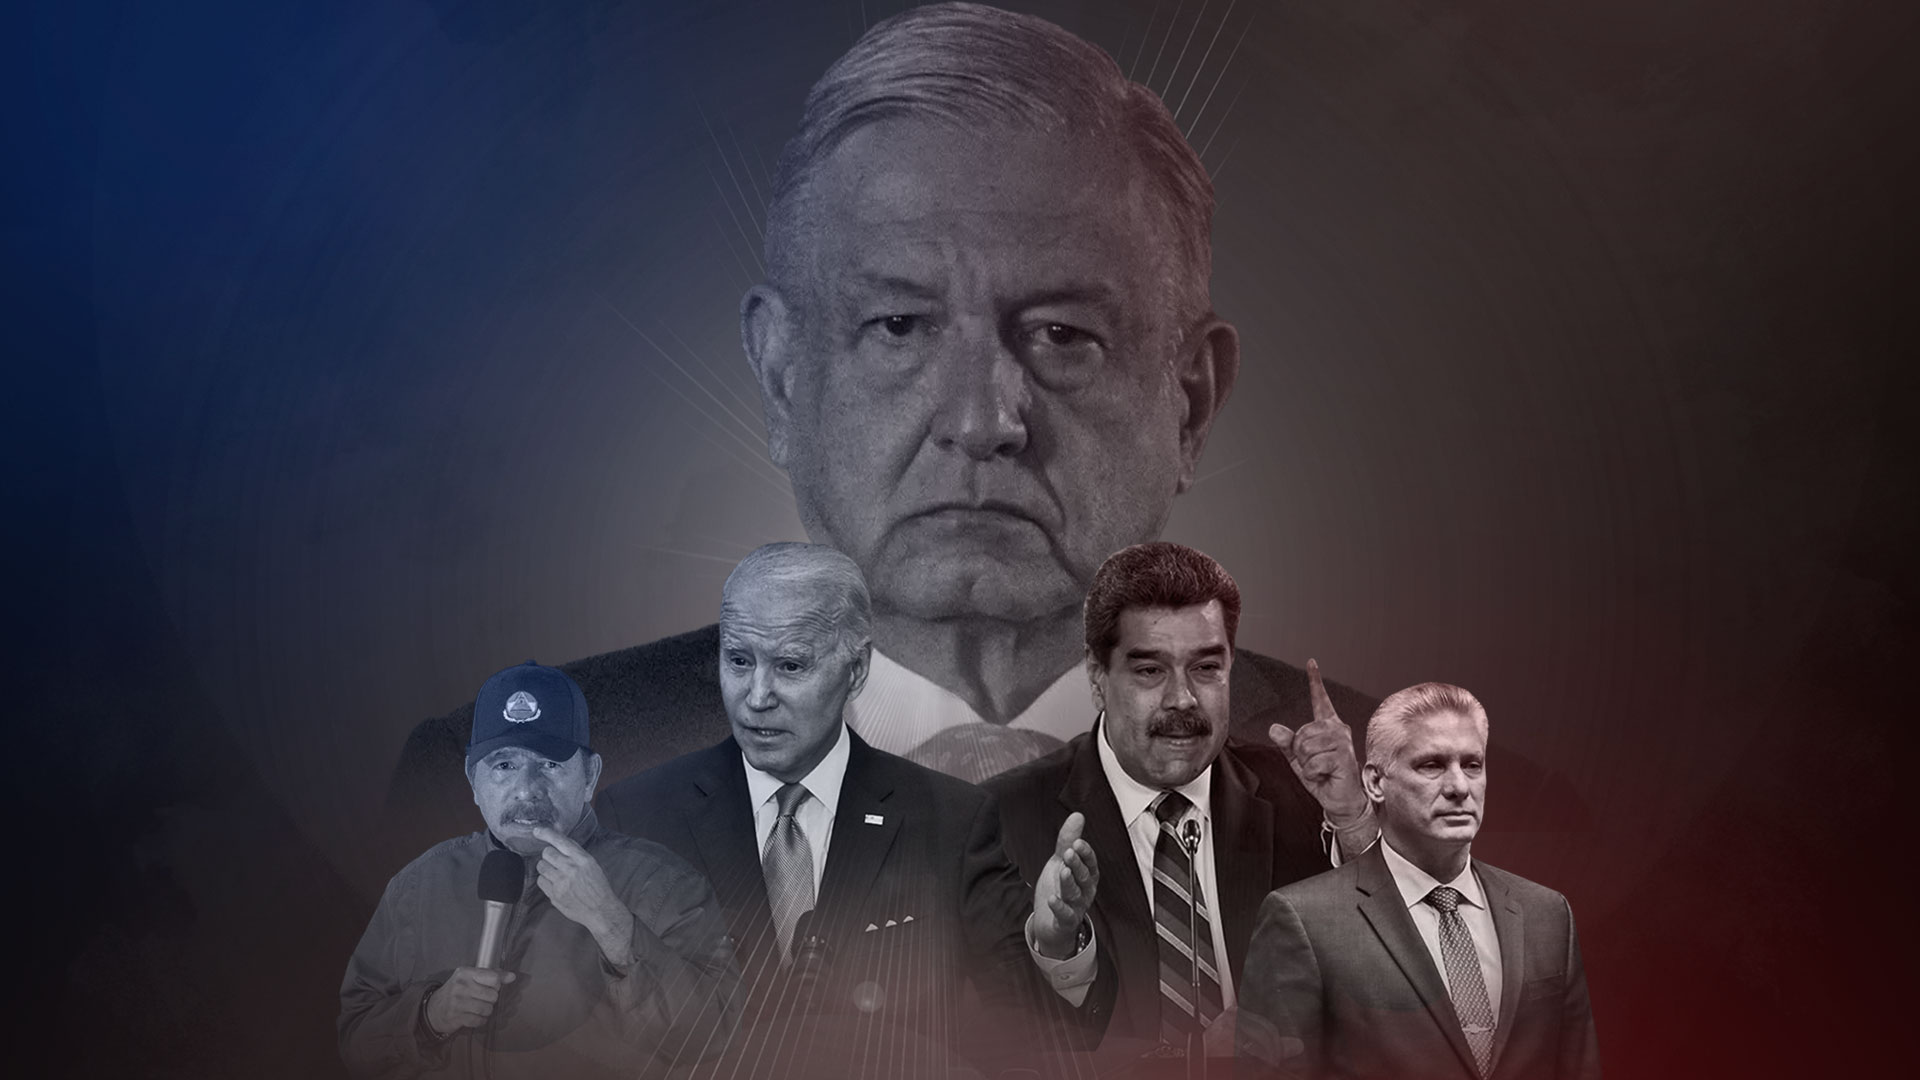 Cumbre de las Américas: AMLO busca posicionar ideológicamente a México como “la cabeza de una nueva izquierda latinoamericana”